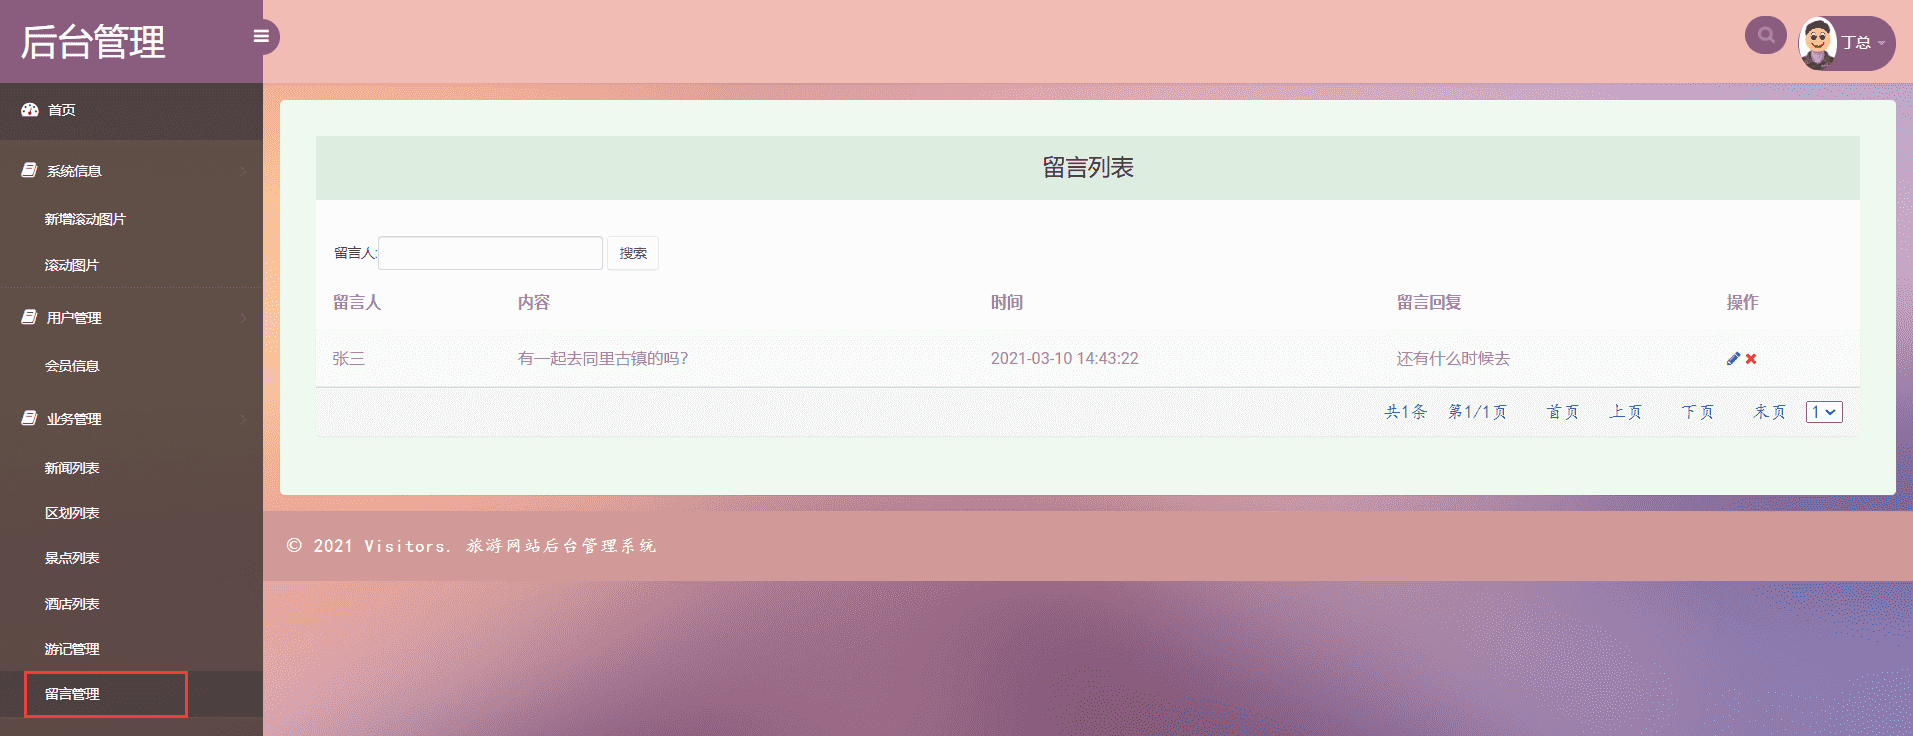 /error/404.png